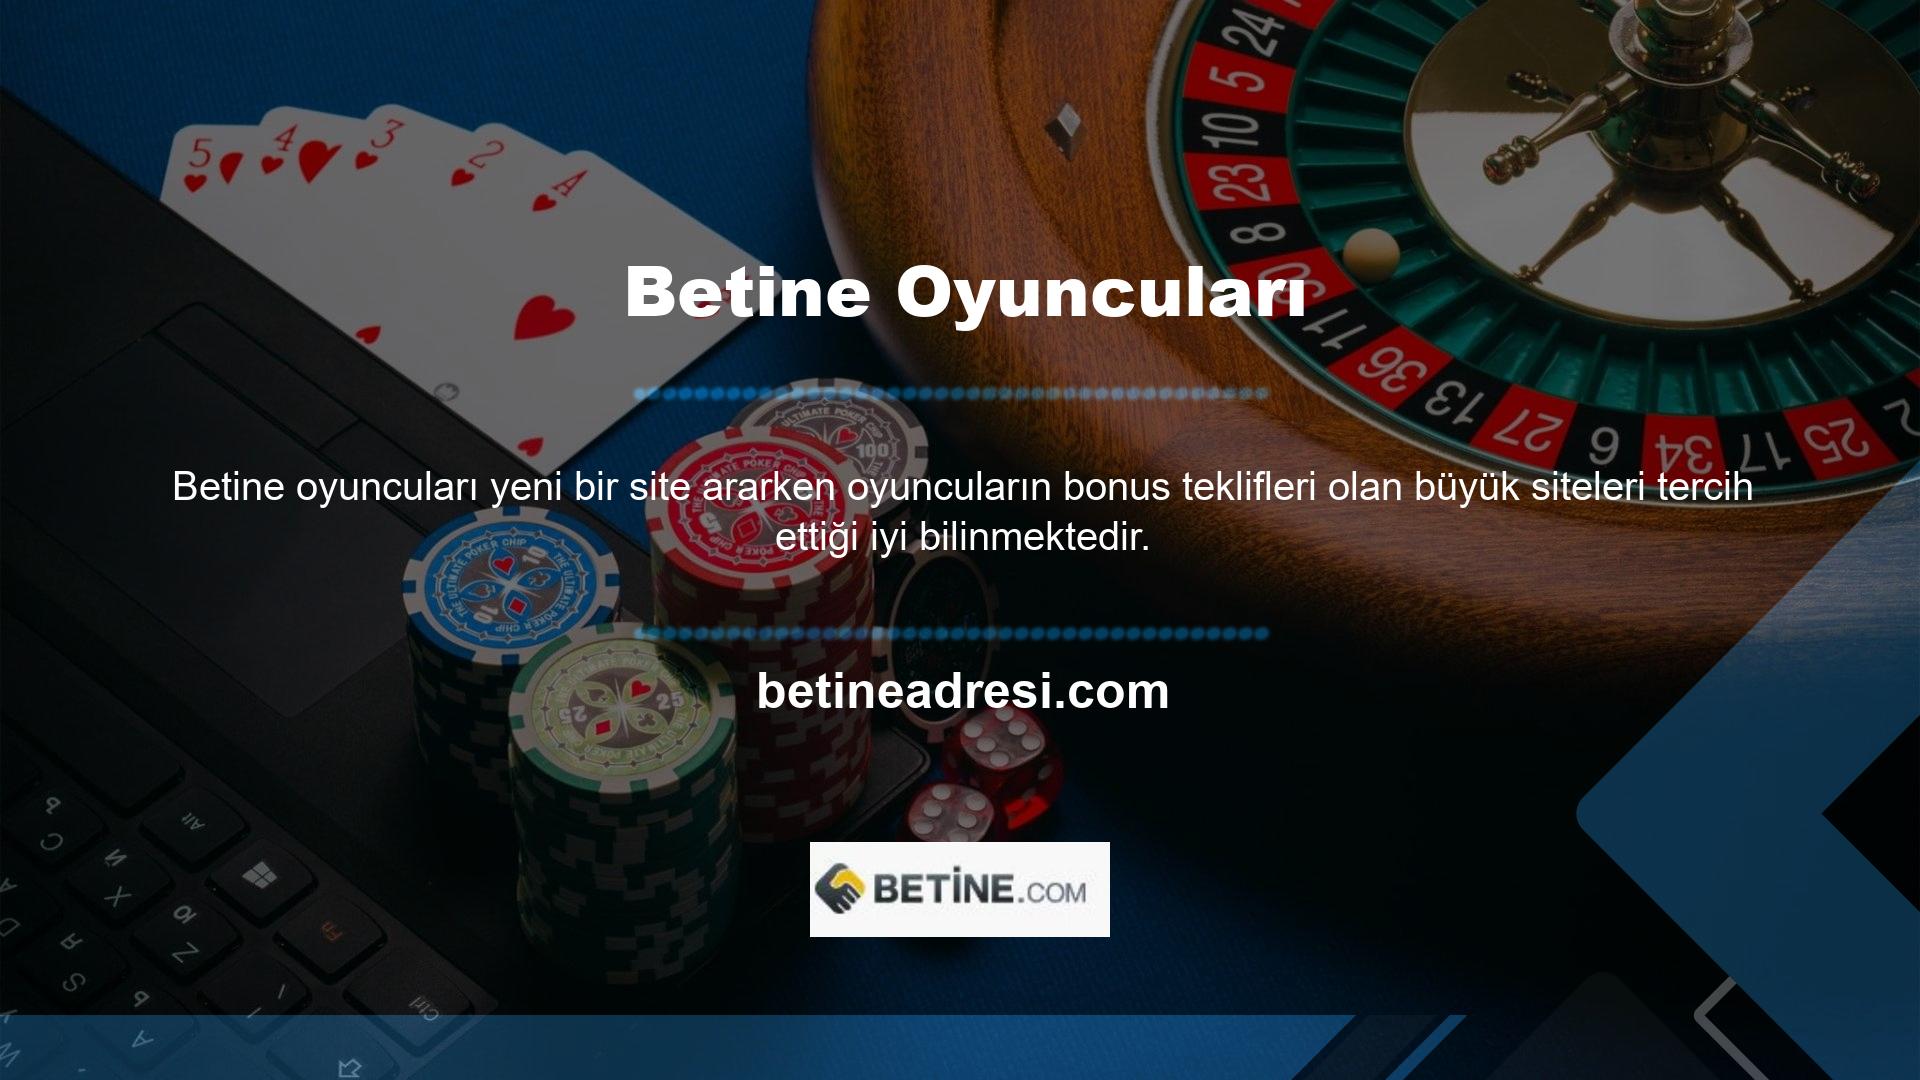 Site ayrıca Betine mobil kullanıcılarına üyelik anından itibaren kapsamlı bonus kampanyaları da sunmaktadır